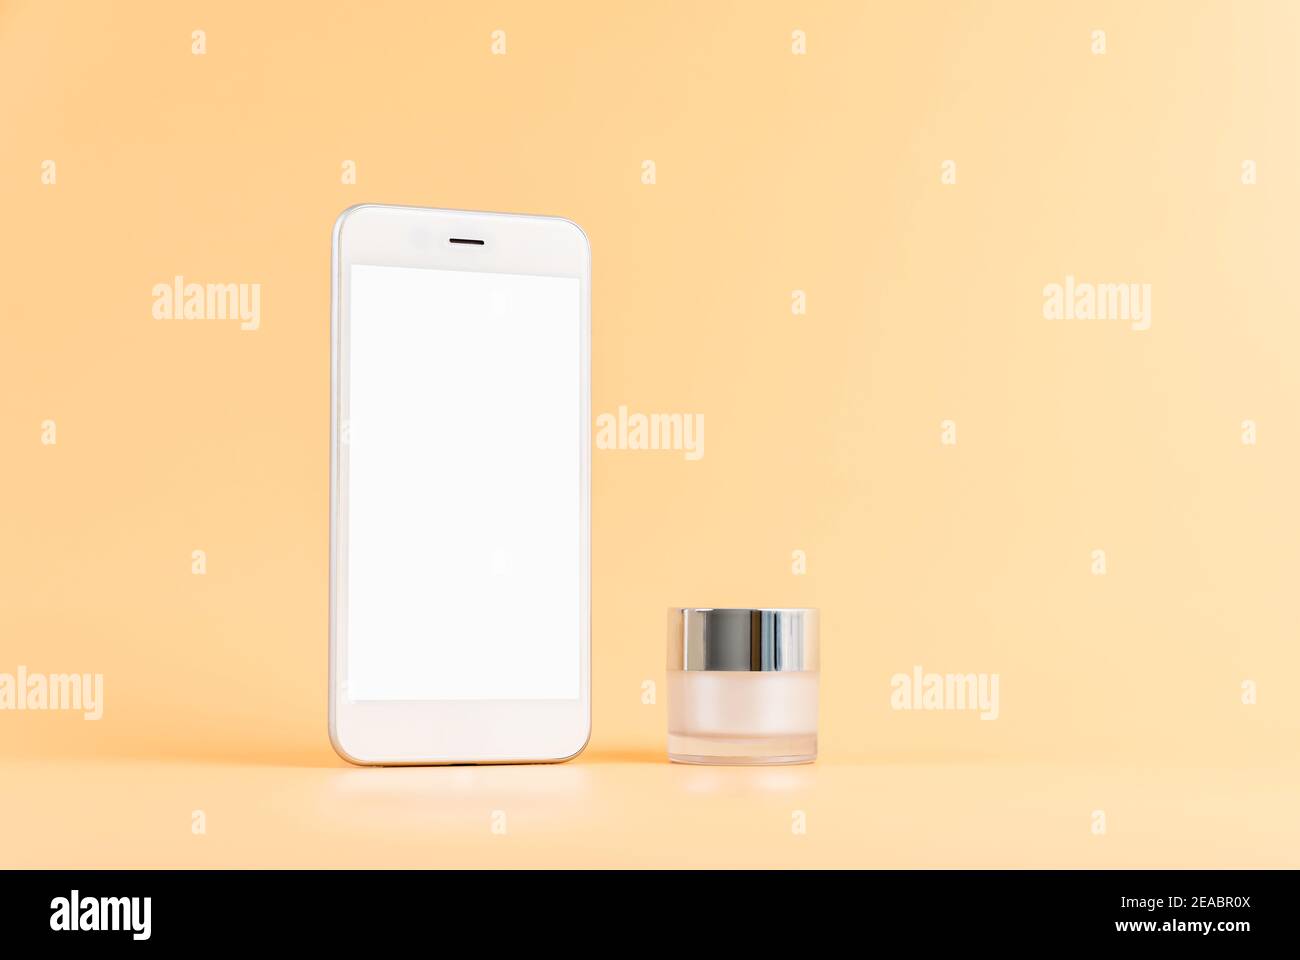 Maqueta de la pantalla del smartphone, aplicación de cosméticos en línea. Botella de suero, moca de la Marca de productos de belleza. Foto de stock